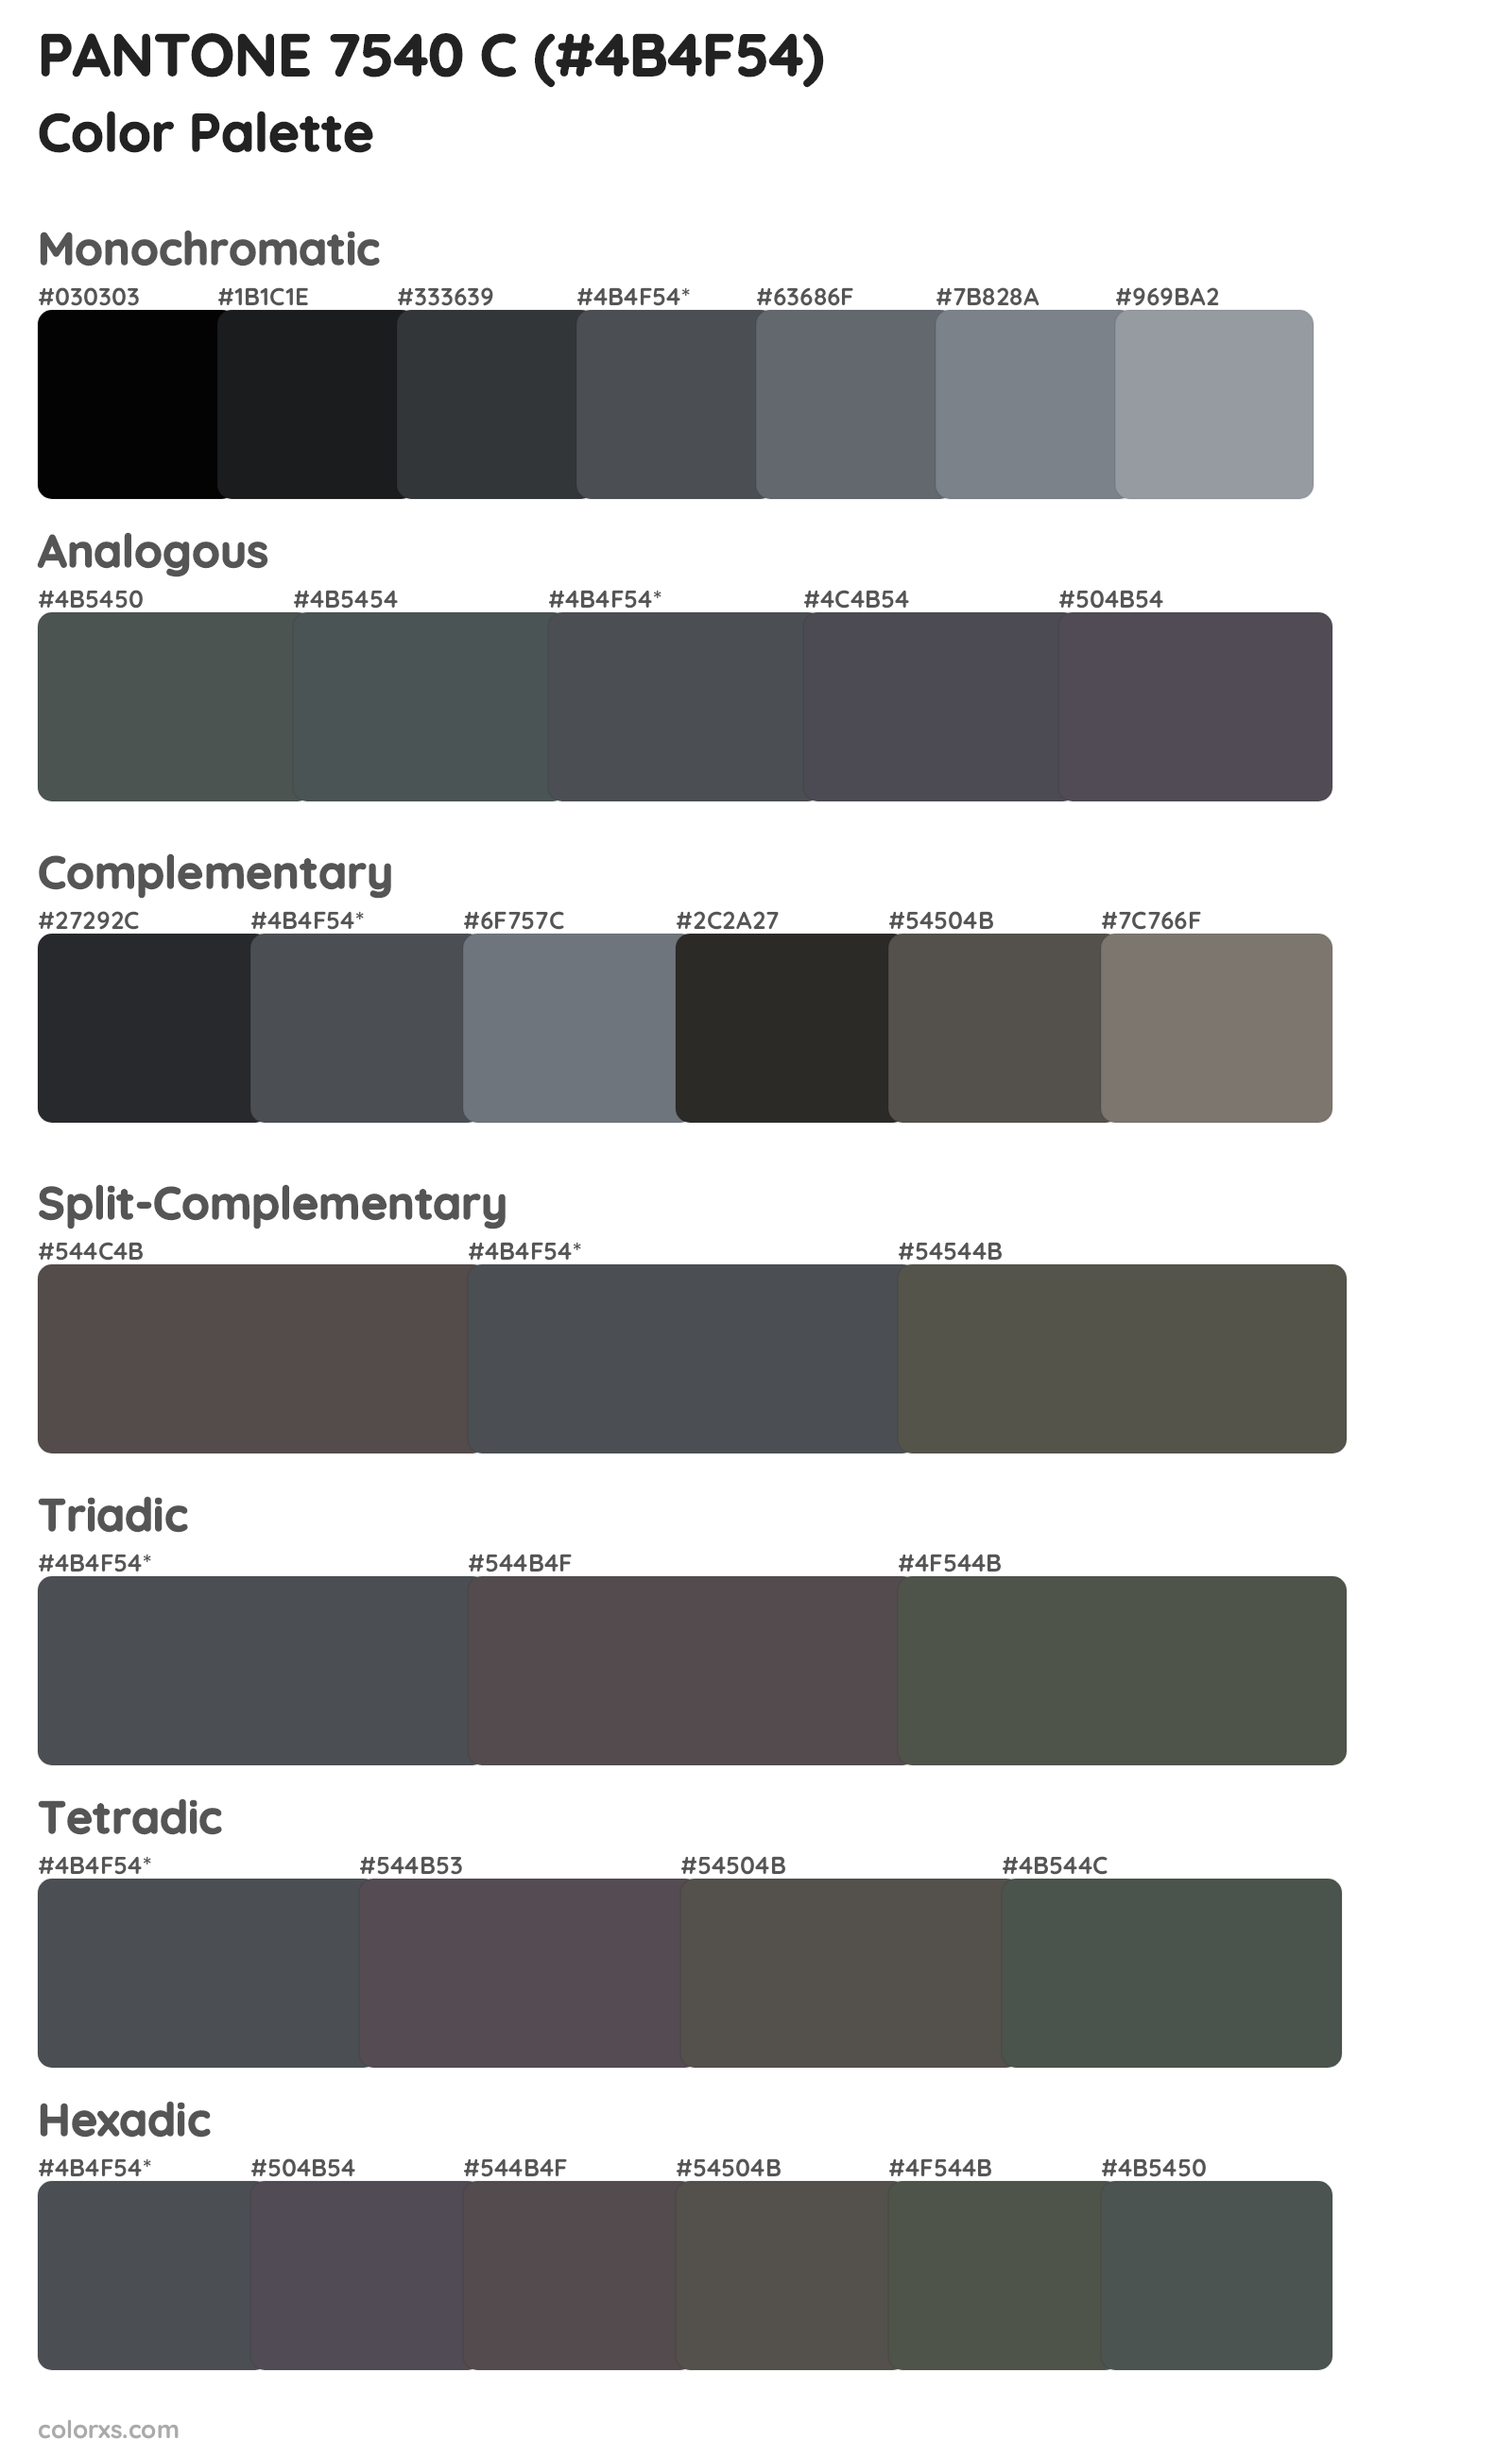 PANTONE 7540 C Color Scheme Palettes